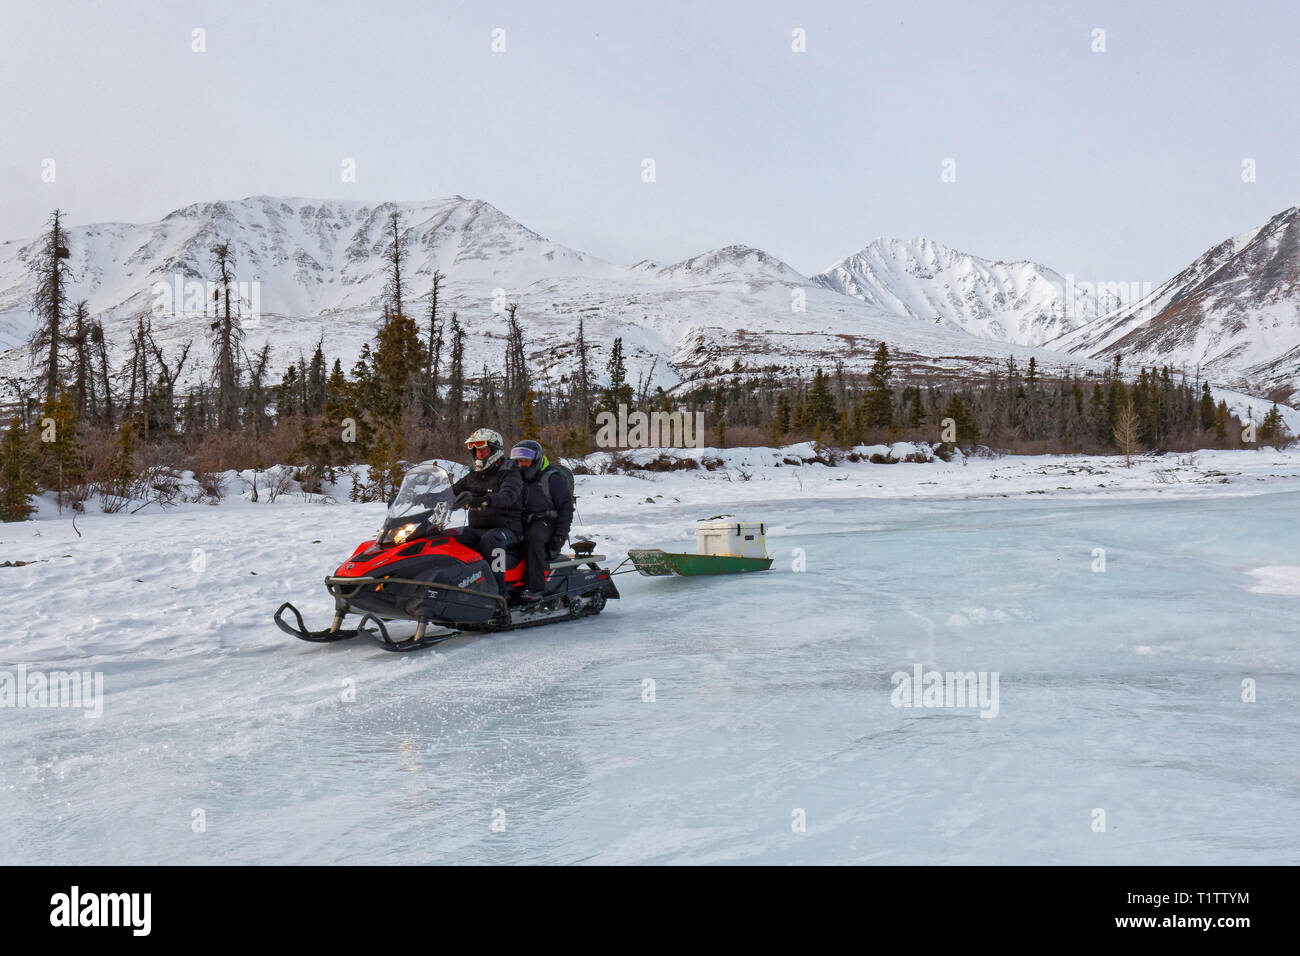 HAINES JUNCTION, Yukon, Kanada, 12. März 2019: Reise sind auf eisfeldern mit Schneemobilen organisiert. Stockfoto